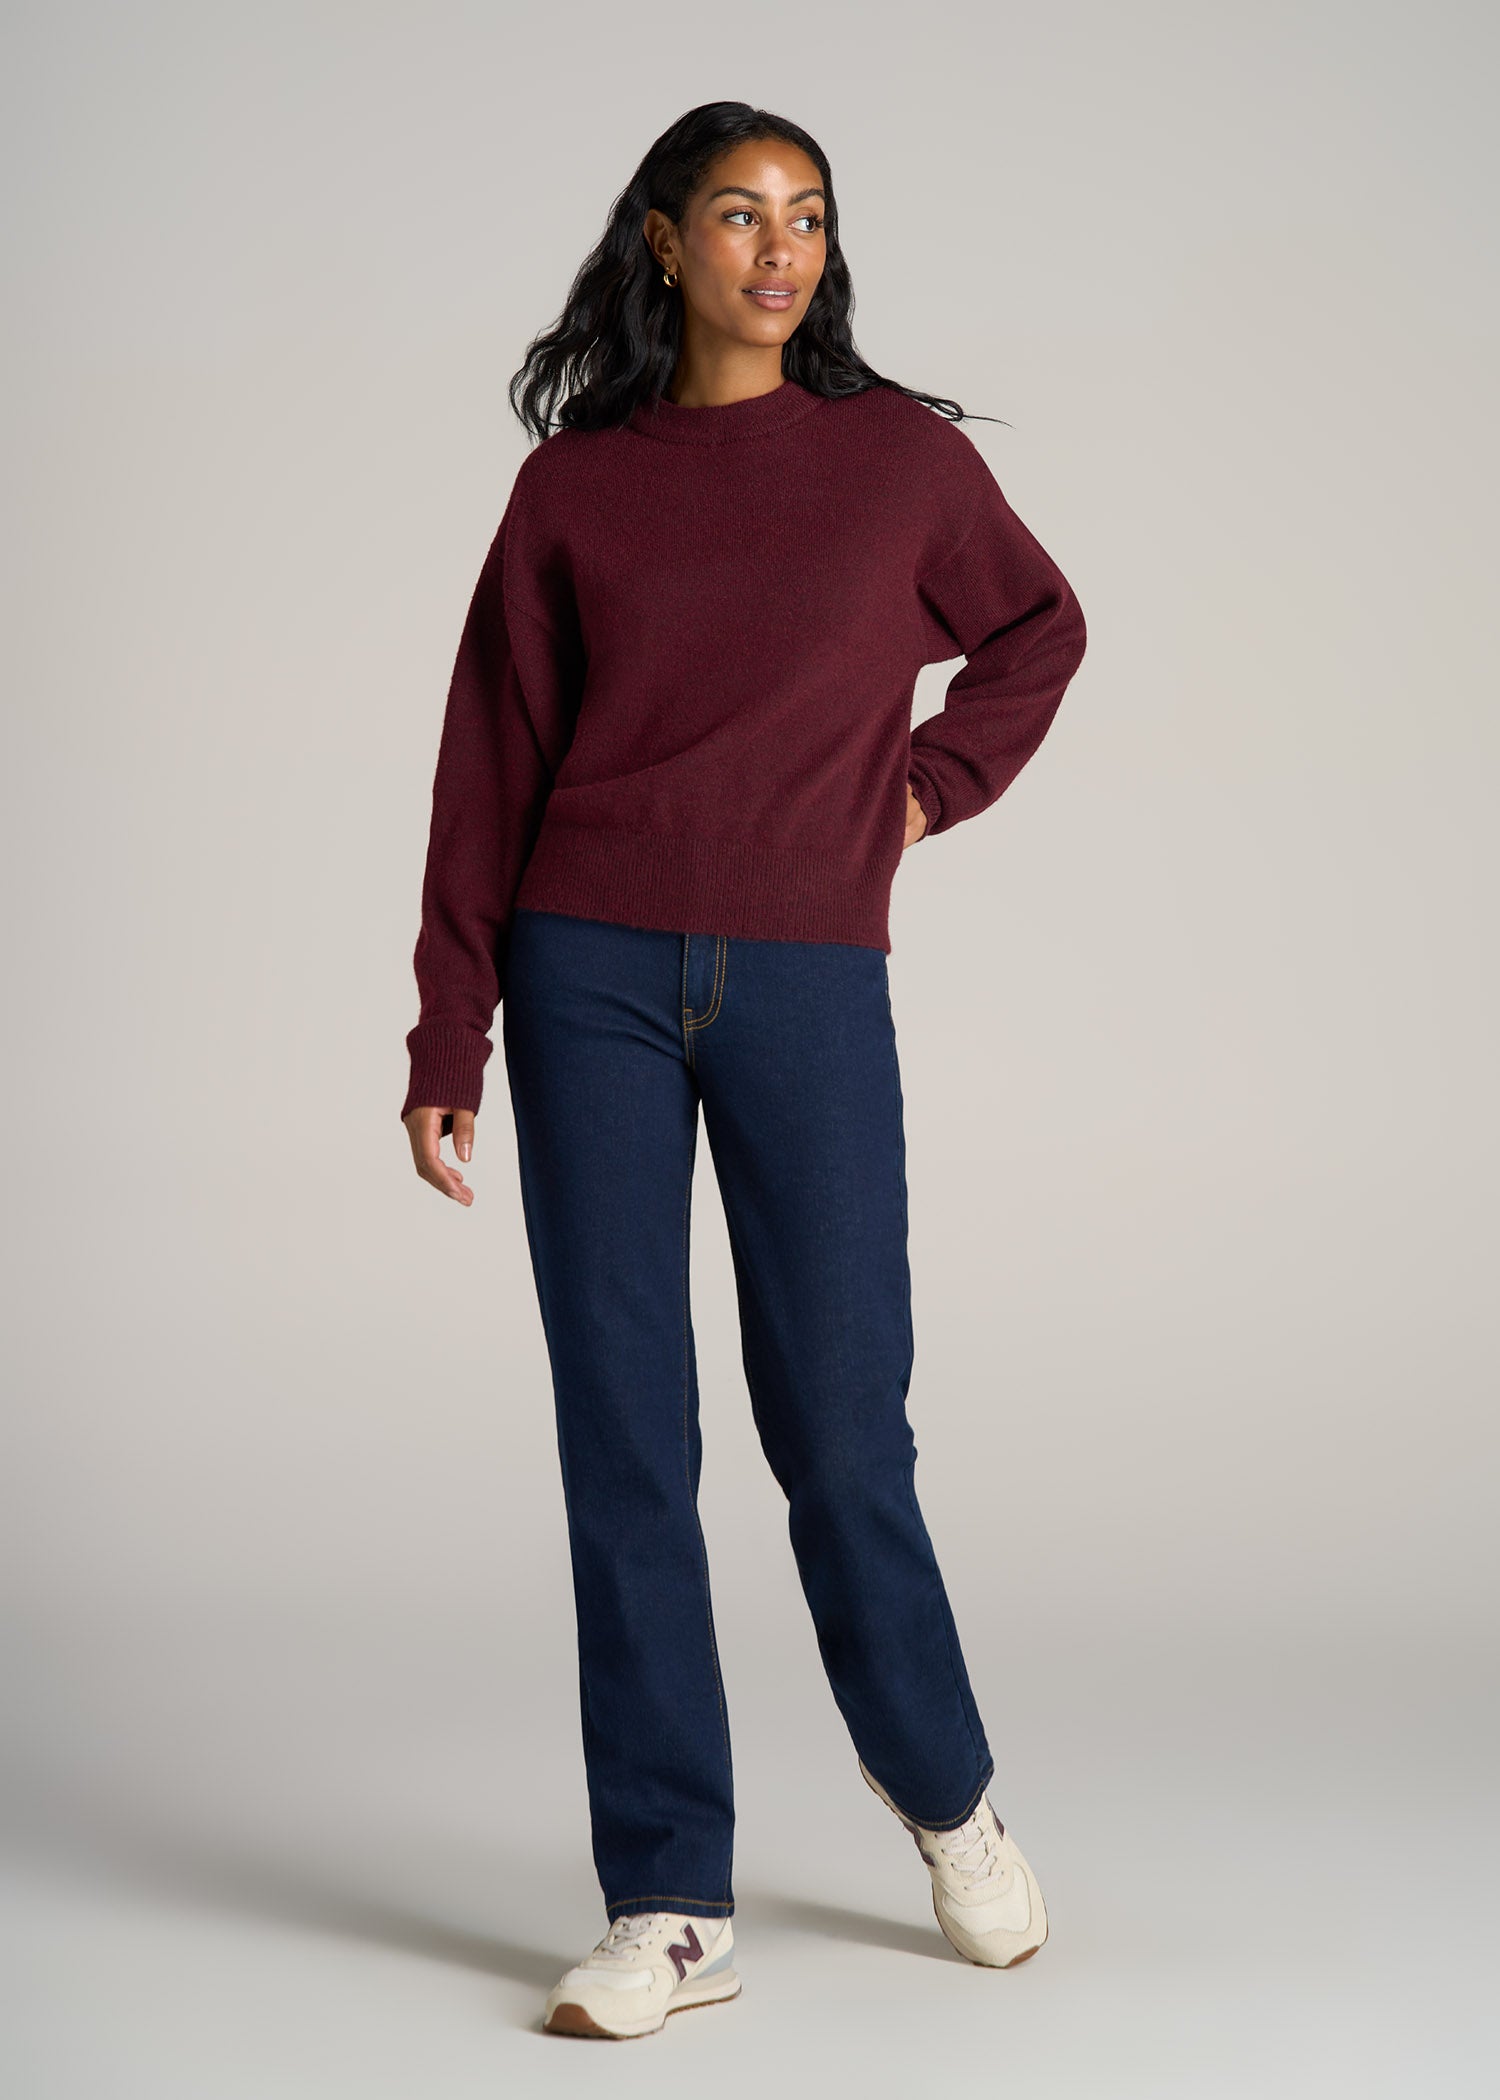 Relaxed Crewneck Wool Blend Tall Women's Sweater